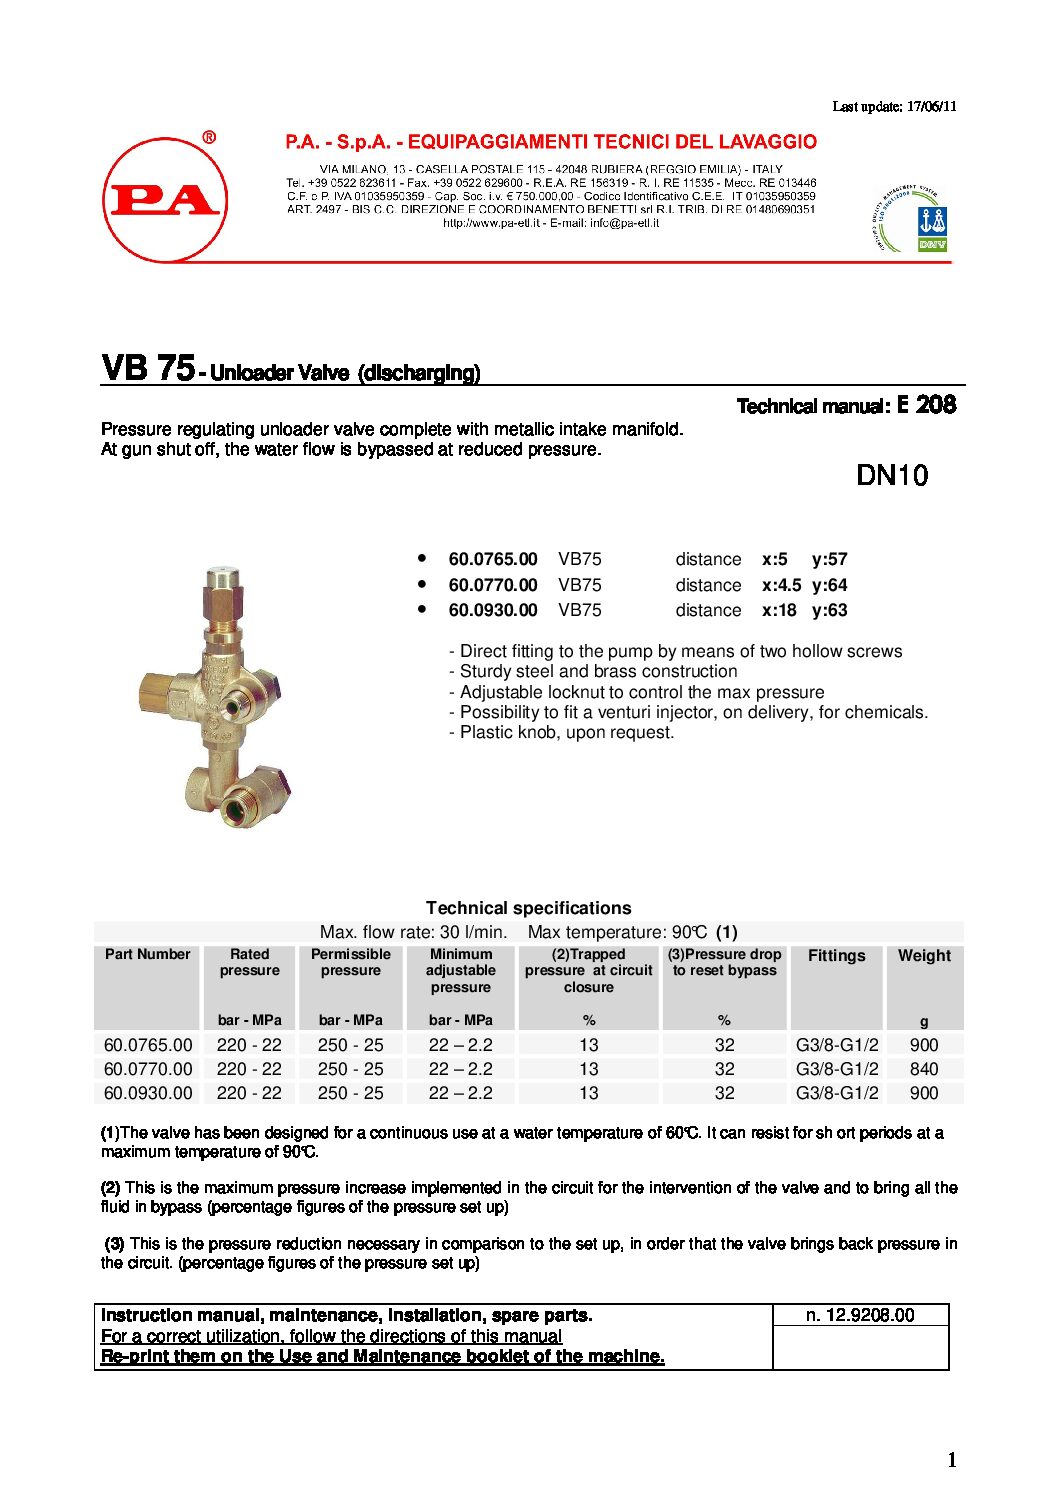 PA VB75 Unloader technical manual